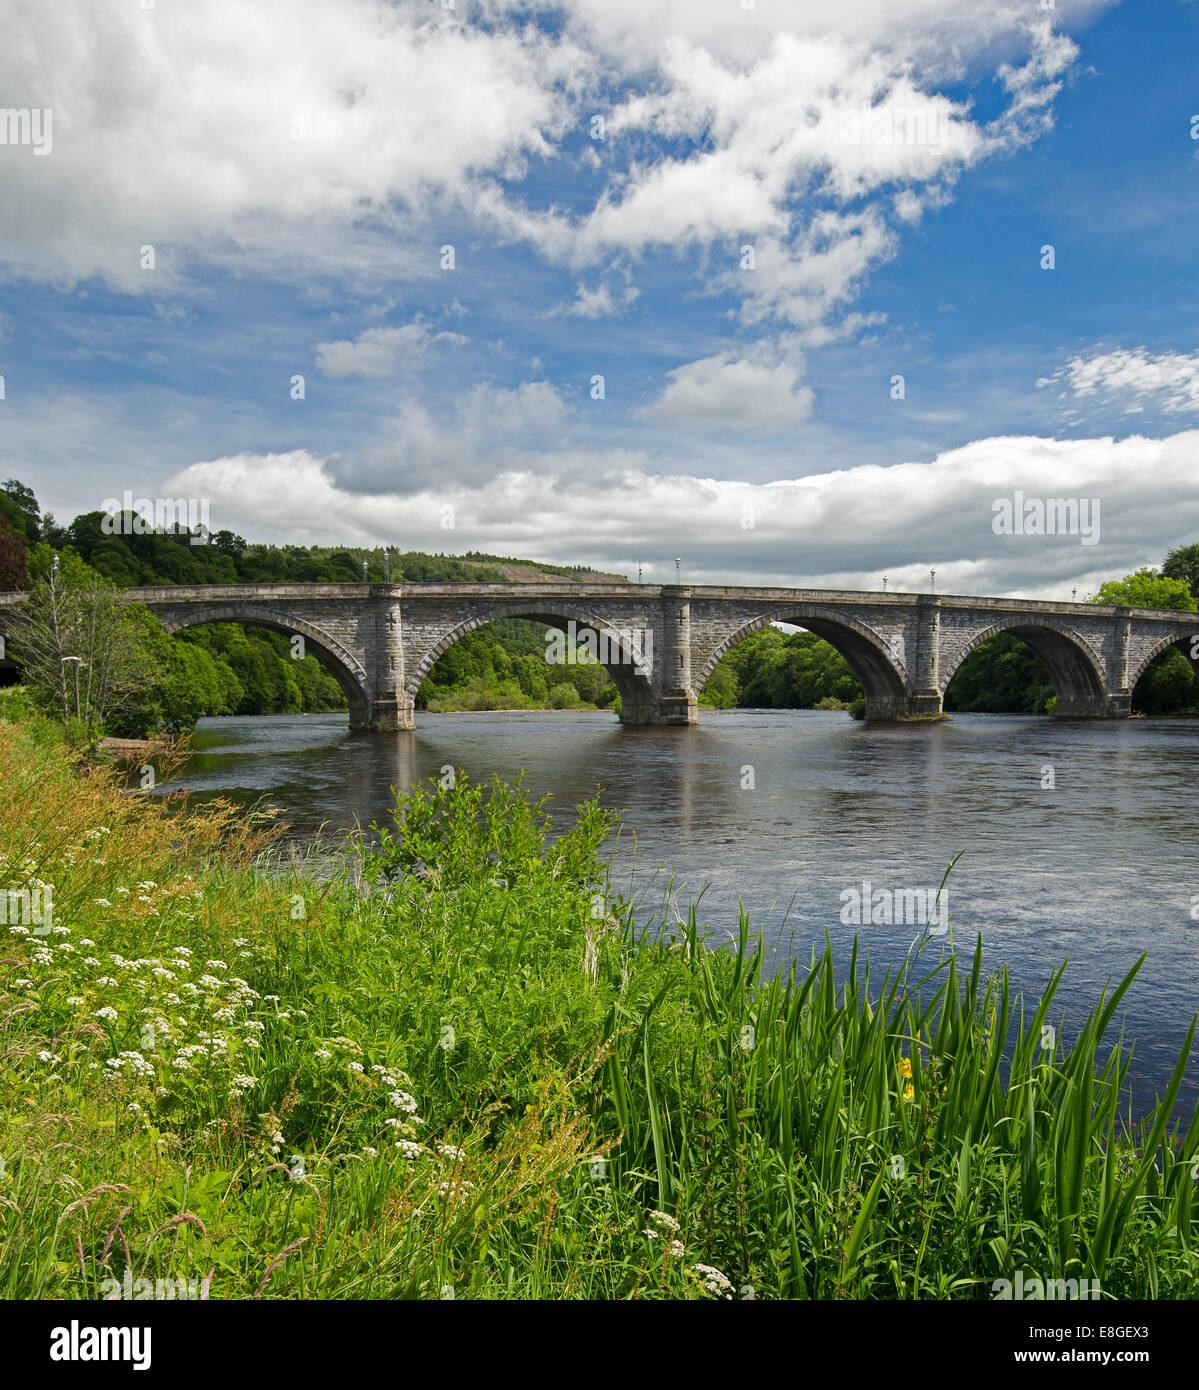 Fluss Tay & historischen 19. Jahrhundert gewölbten Brücke mit Wildblumen am Flussufer, blaue Himmel spiegelt sich im Wasser bei Dunkeld, Scotlland Stockfoto